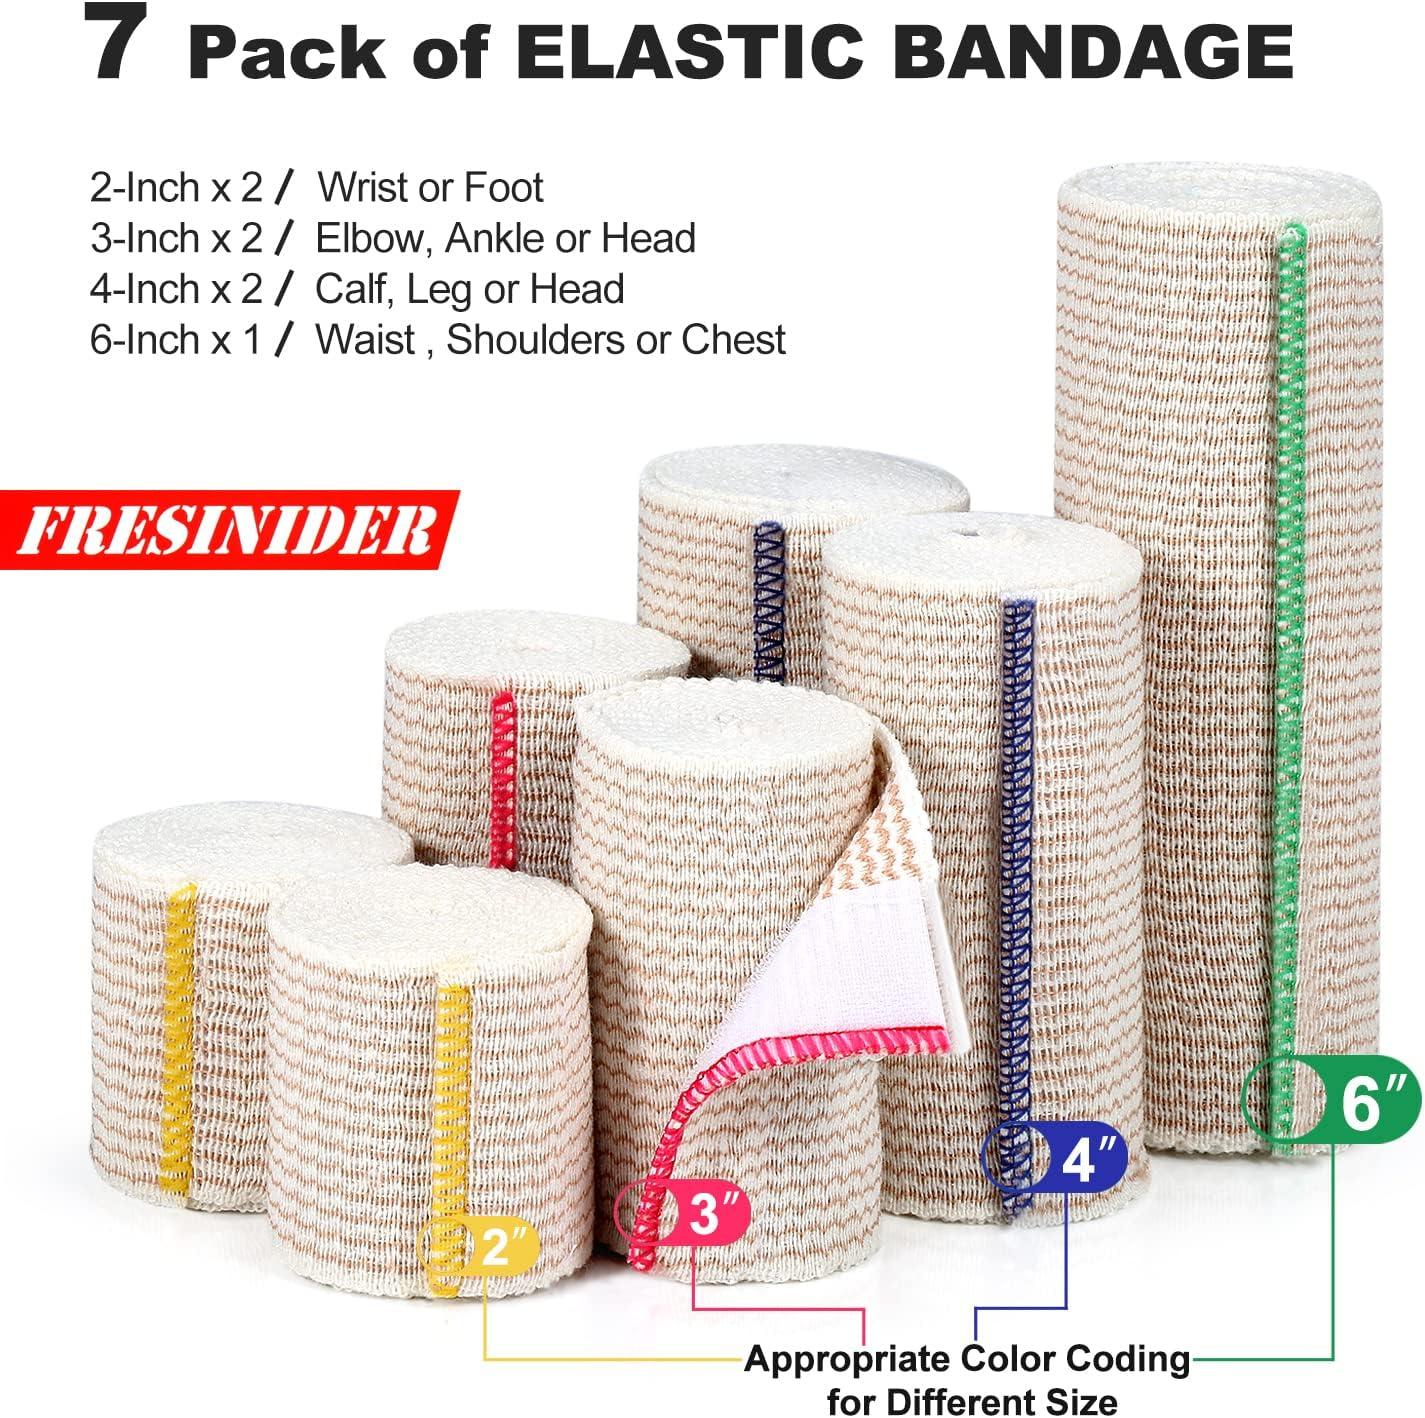 FRESINIDER Premium Elastic Bandage Wrap 4 Pack 6 Cotton Latex Free